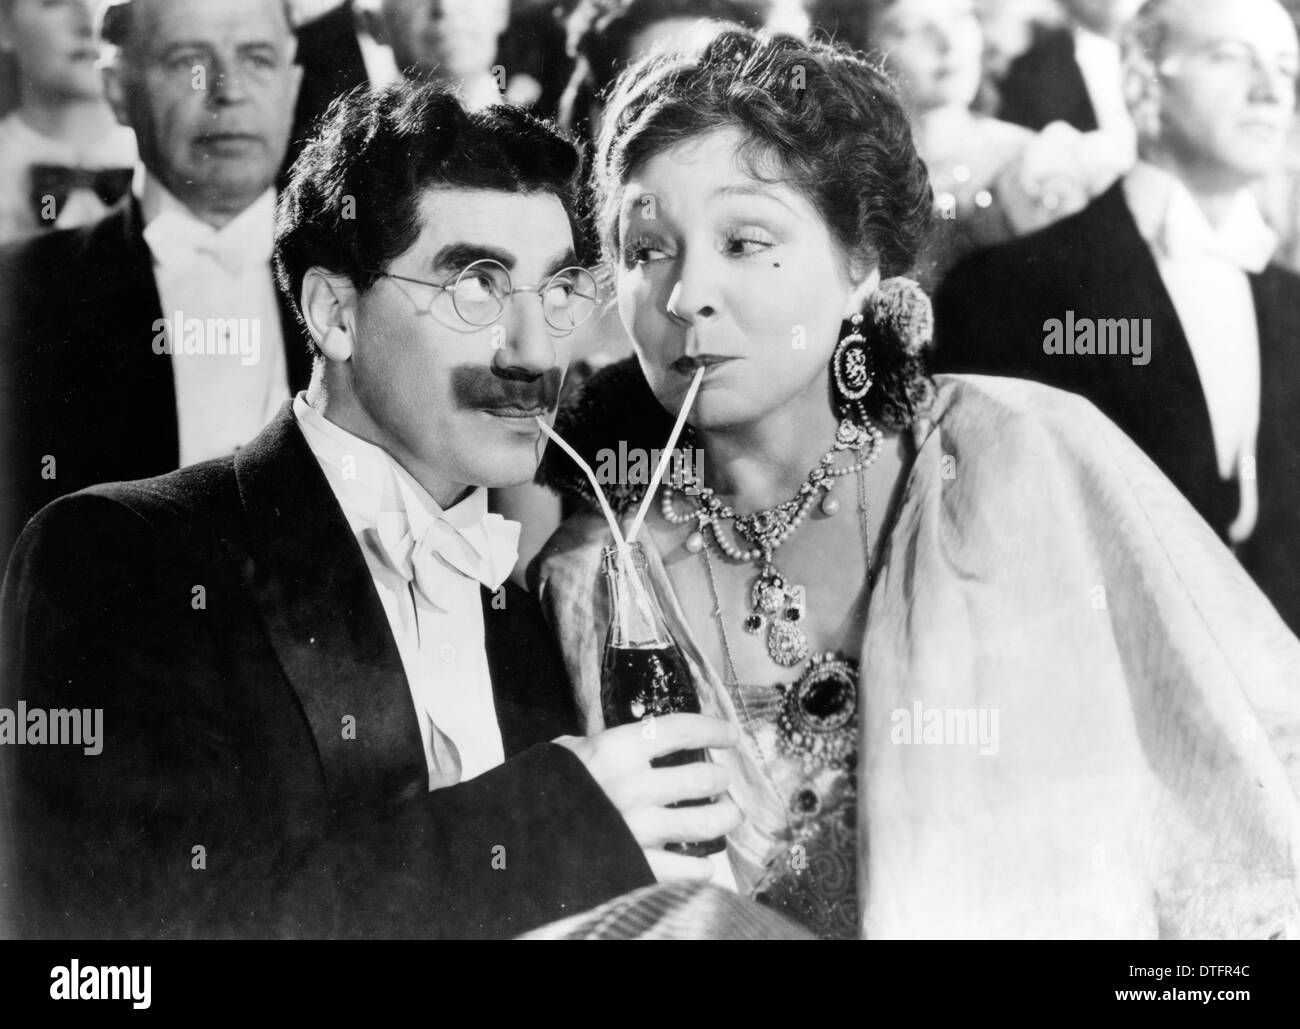 Al circo 1939 MGM film con Groucho Marx e Margaret Dumont Foto Stock